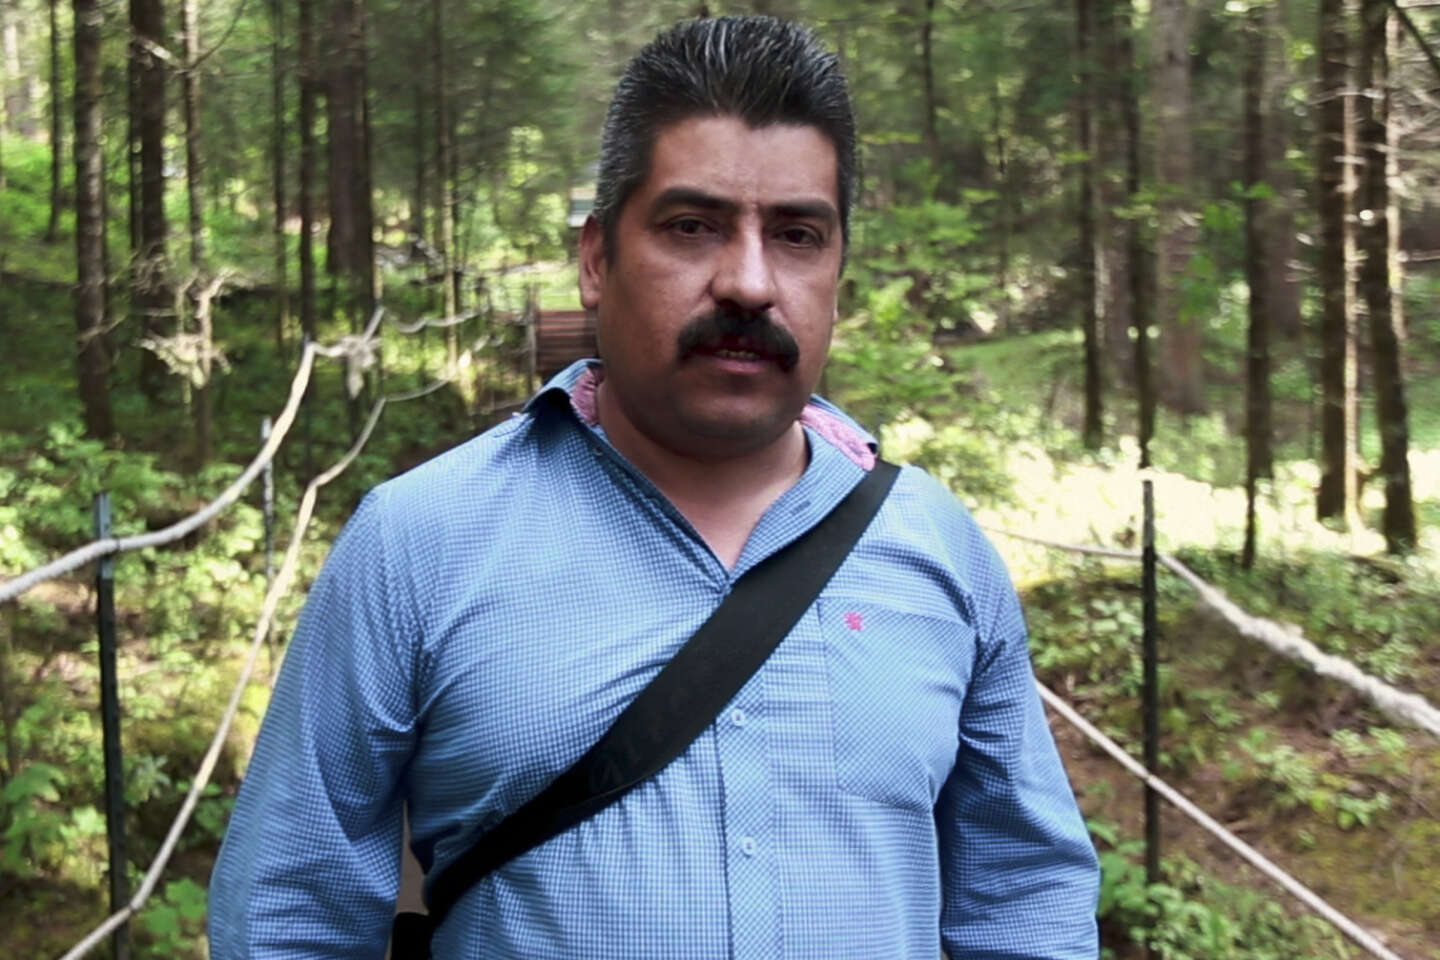 Regarder la vidéo « Le Gardien des monarques », sur Netflix : qui a tué Homero Gomez, protecteur des papillons au Mexique ?